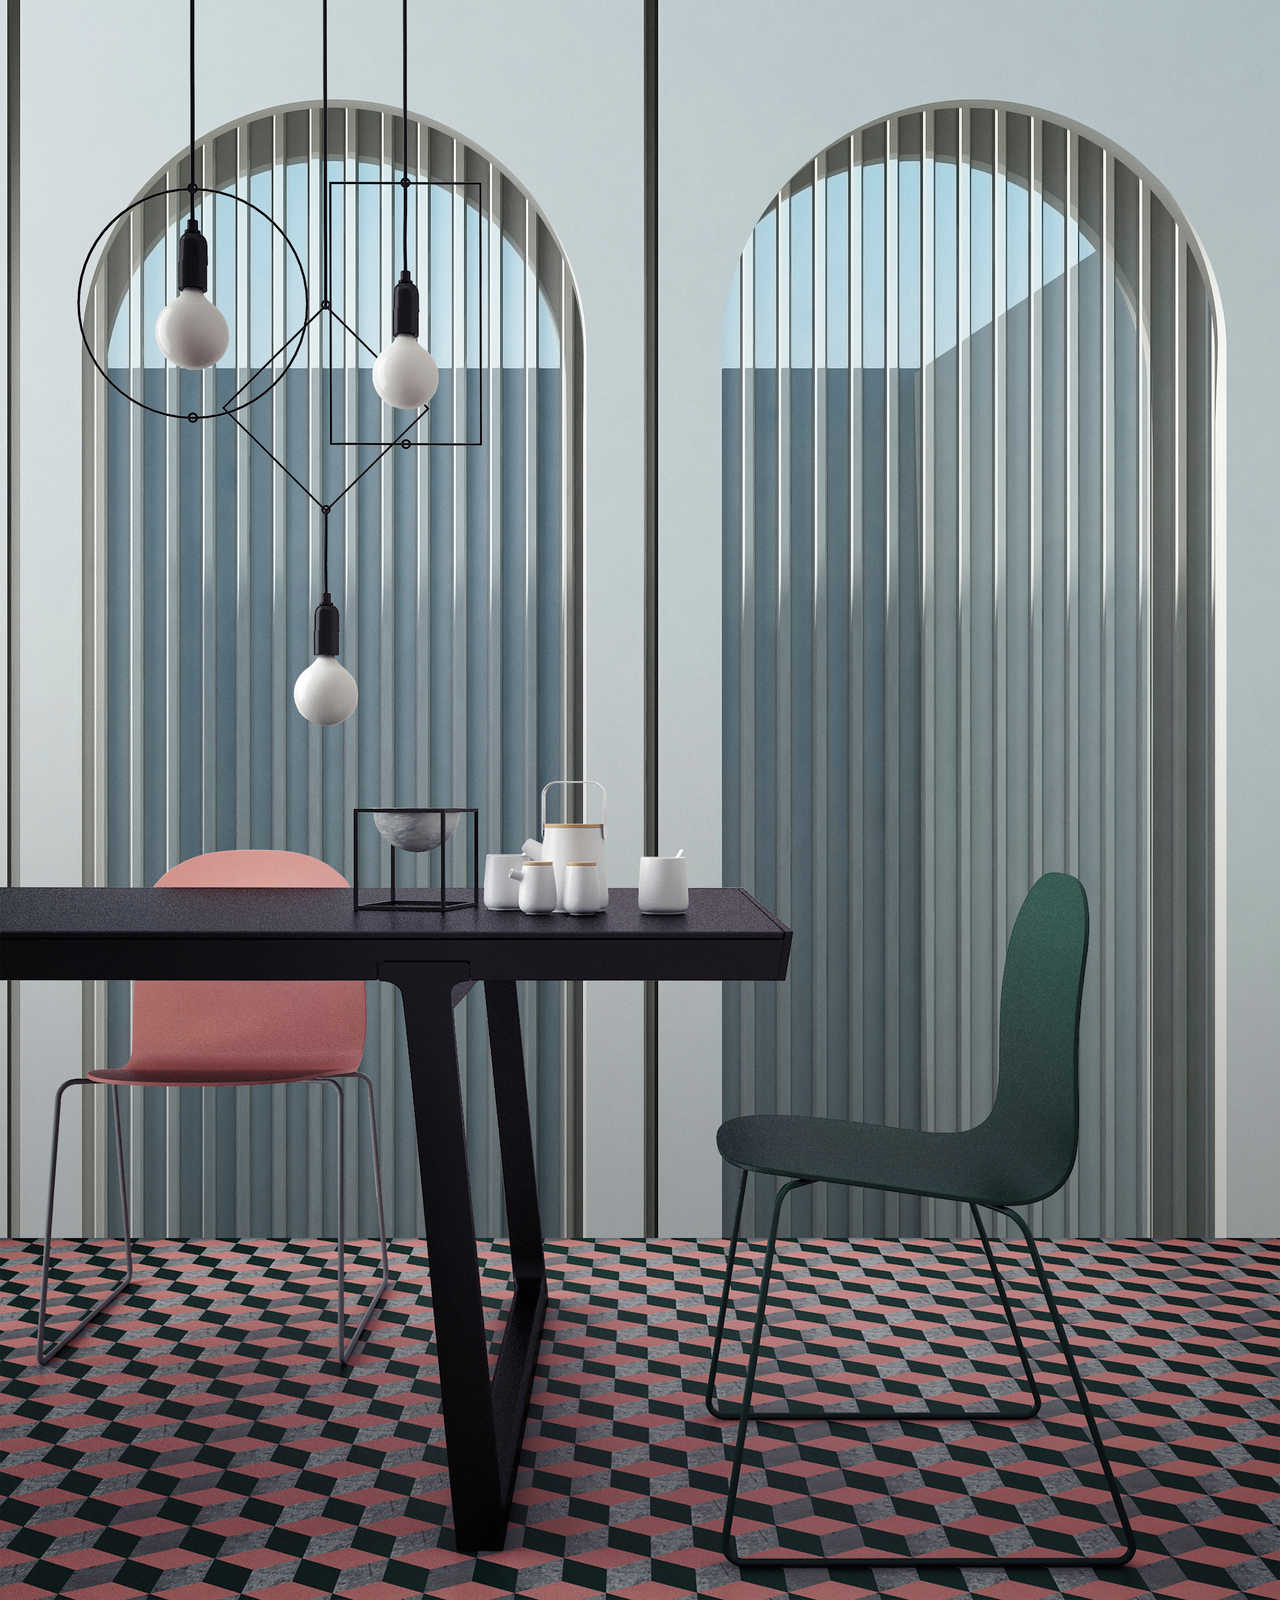             Escape Room 1 - Papier peint panoramique architecture moderne bleu & gris
        